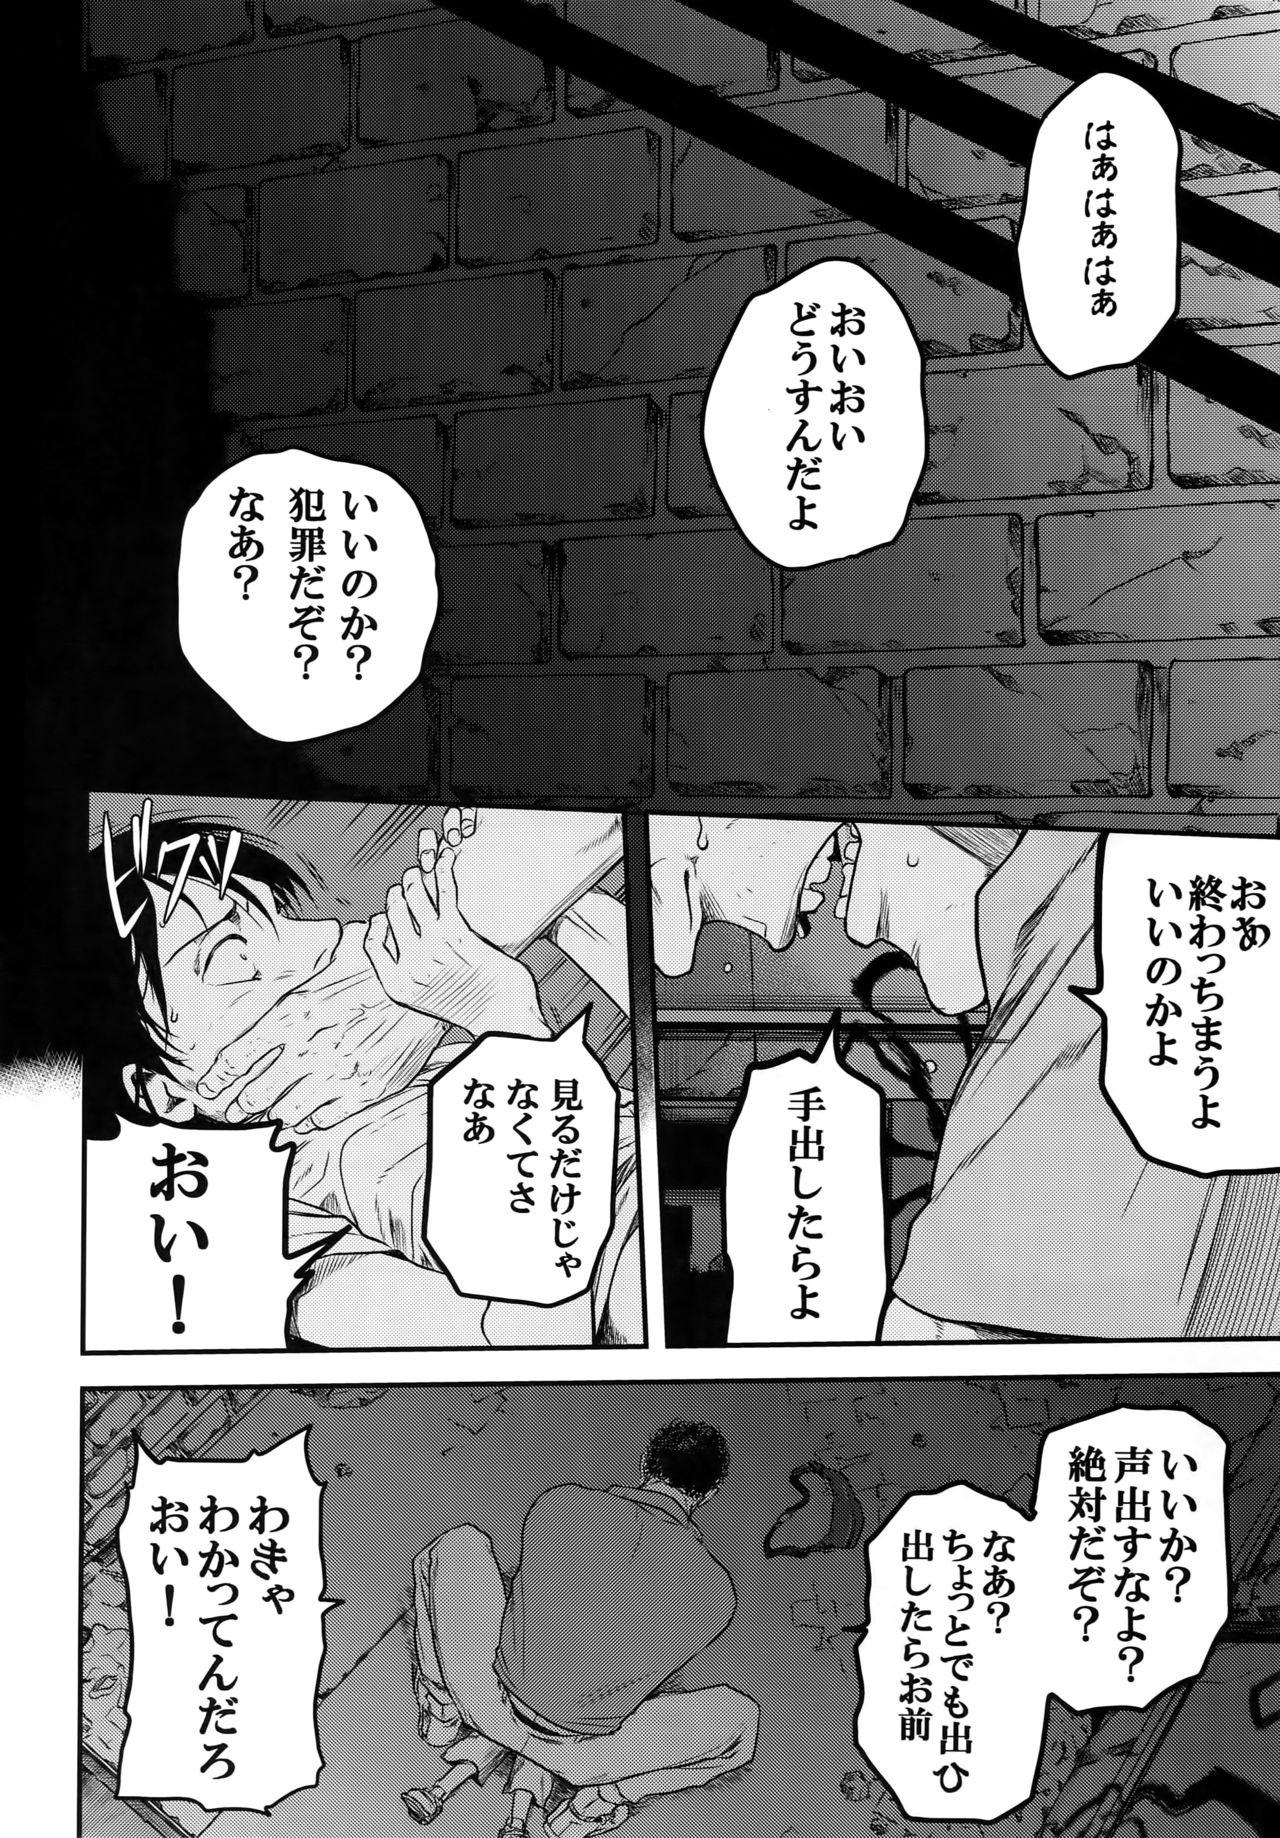 Mediumtits Nisemono Hero - Shingeki no kyojin Shemale - Page 3